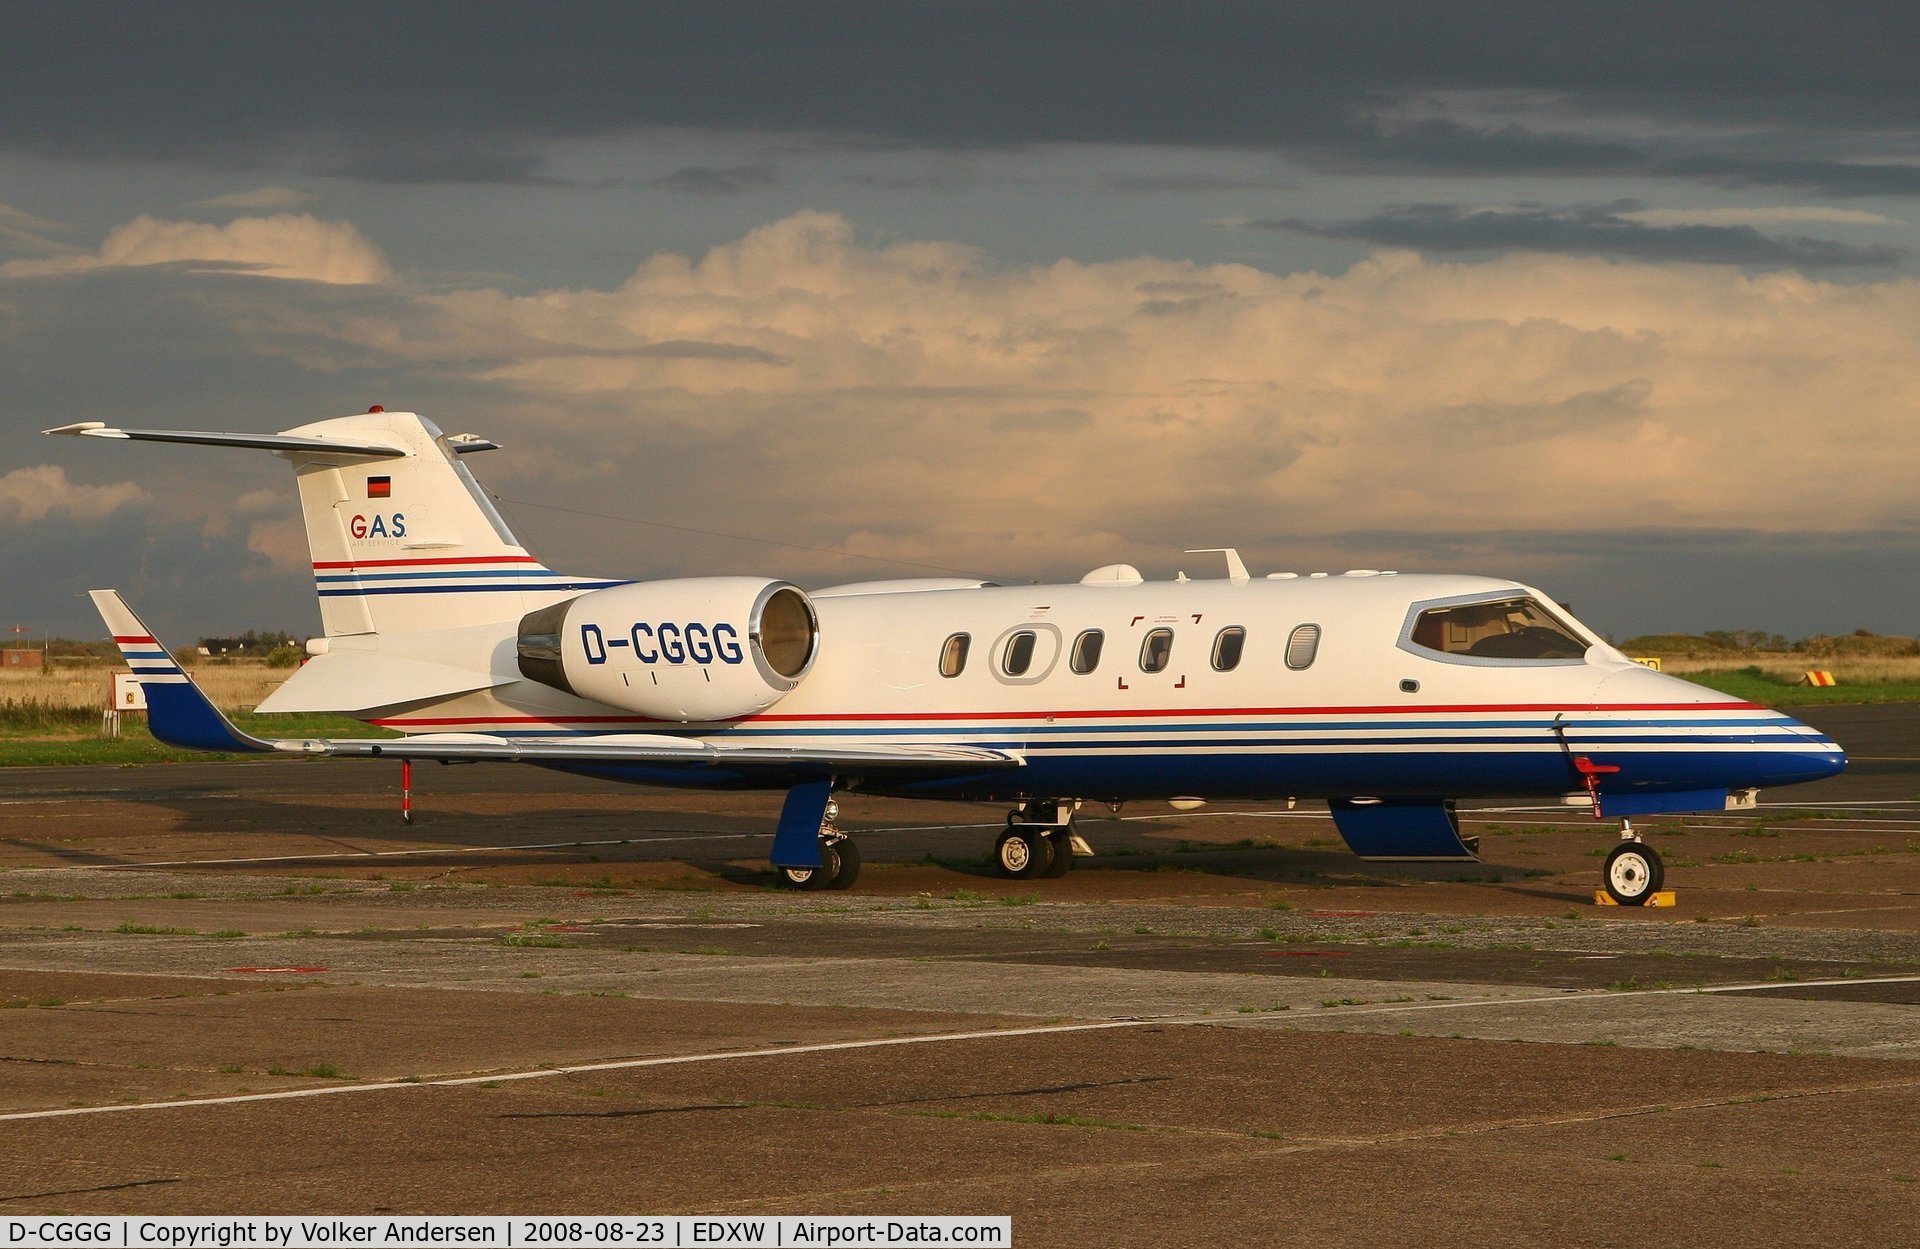 D-CGGG, 2001 Learjet 31A C/N 31A-227, GAS Air Services